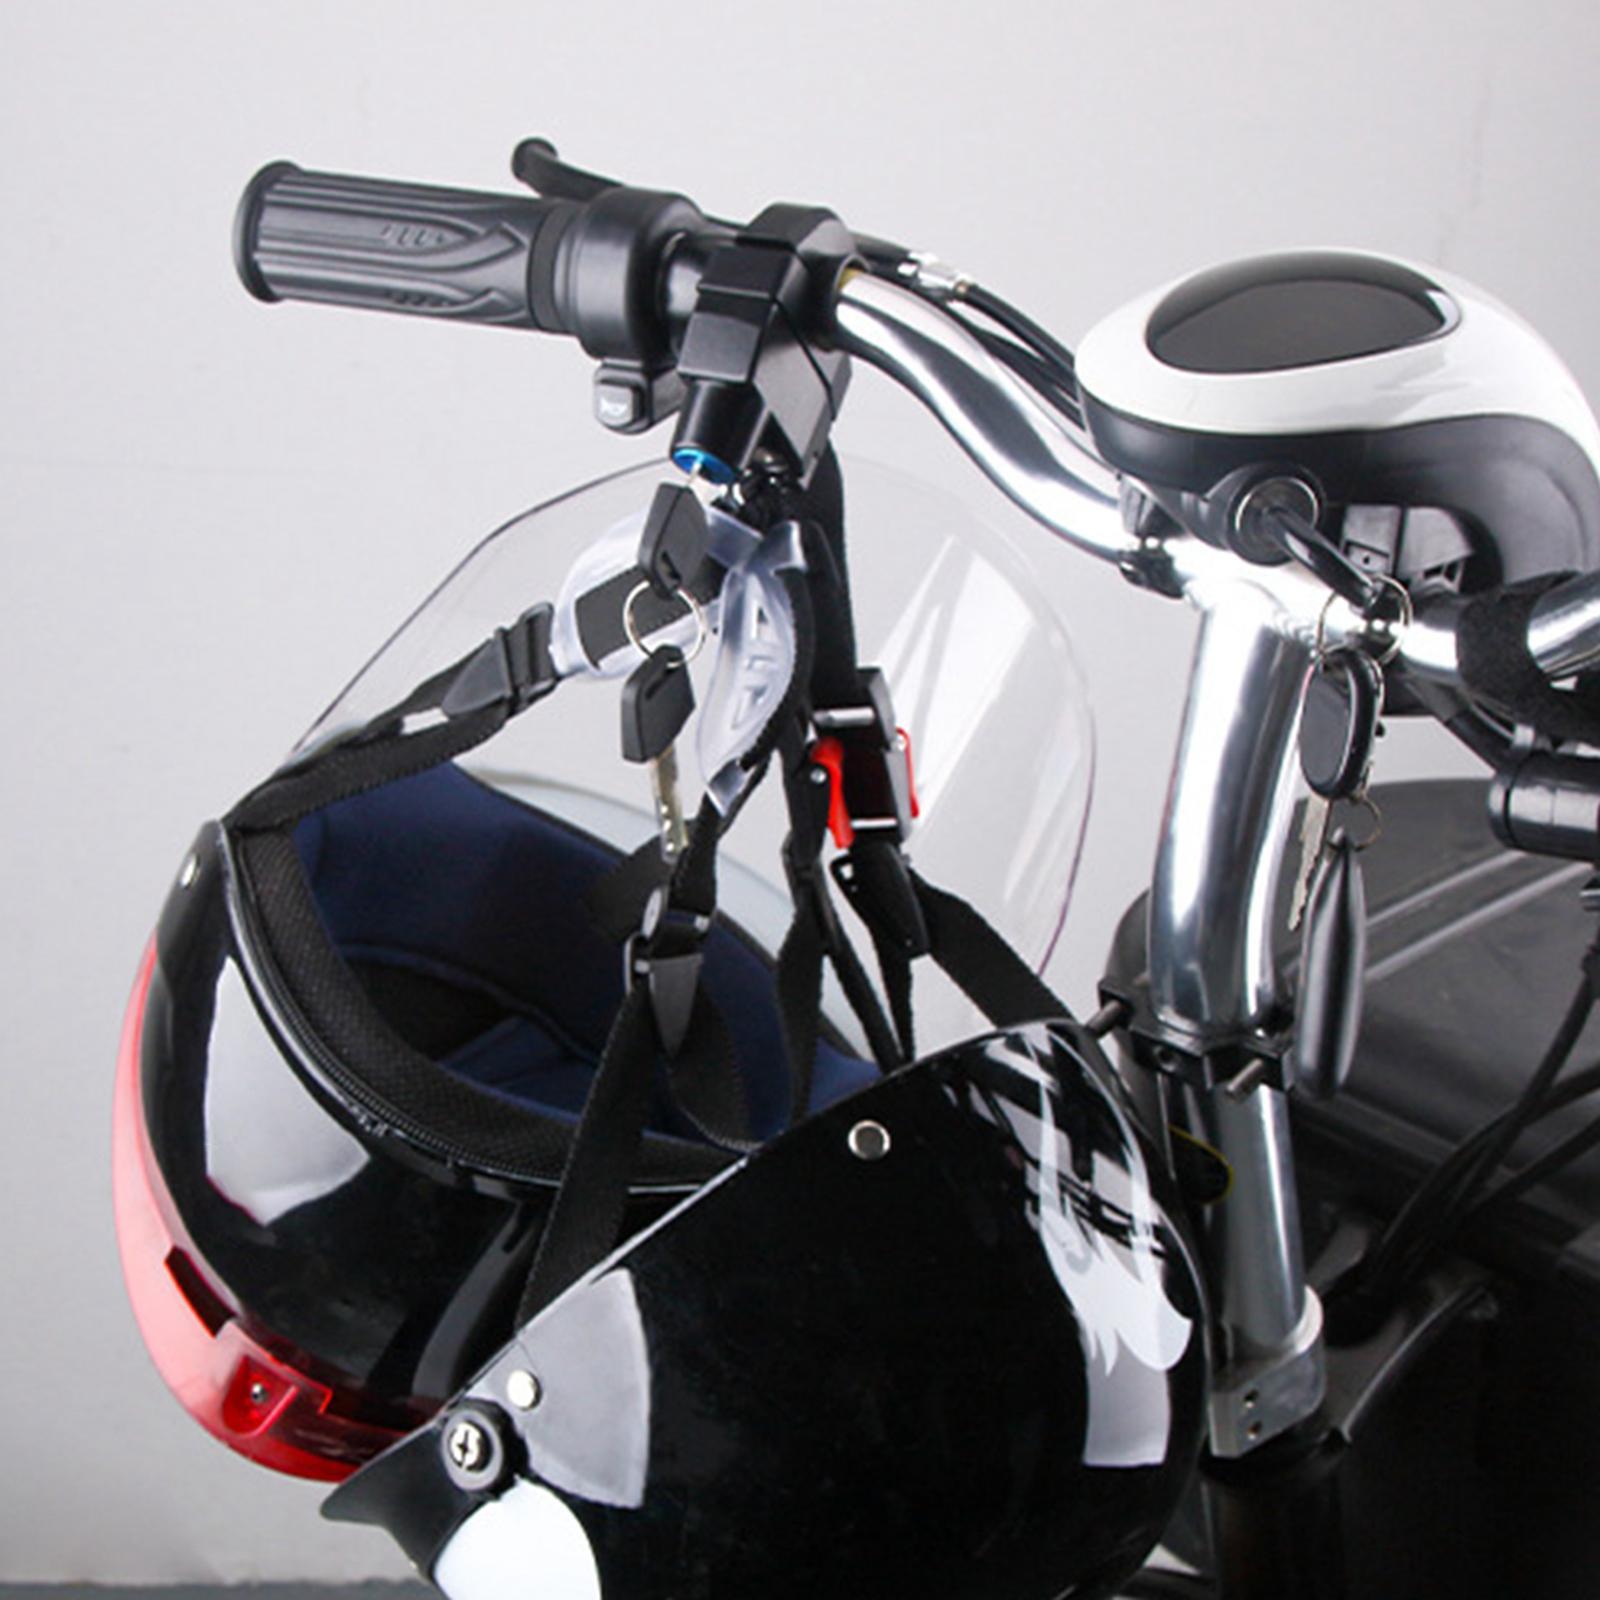 Motorcycle Helmet Lock, Safety Lock for Motorbike Scooter Street Bike Waterproof